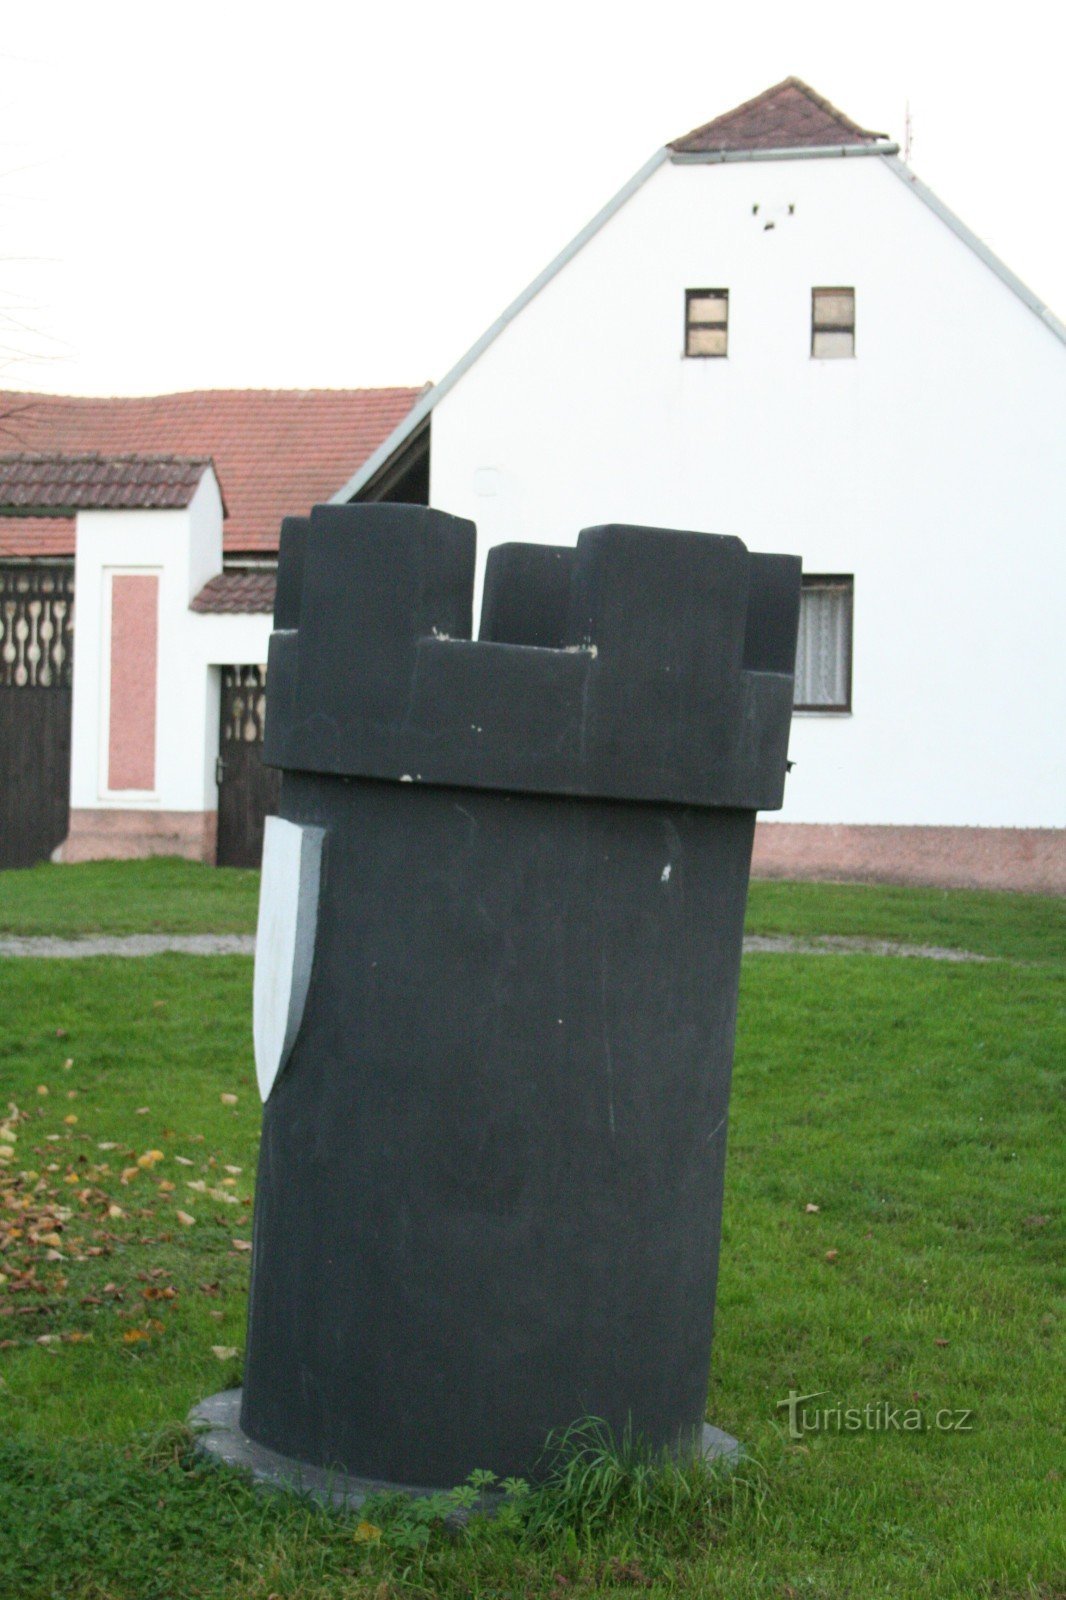 Karlštejnské skak - Black Tower Bubovice